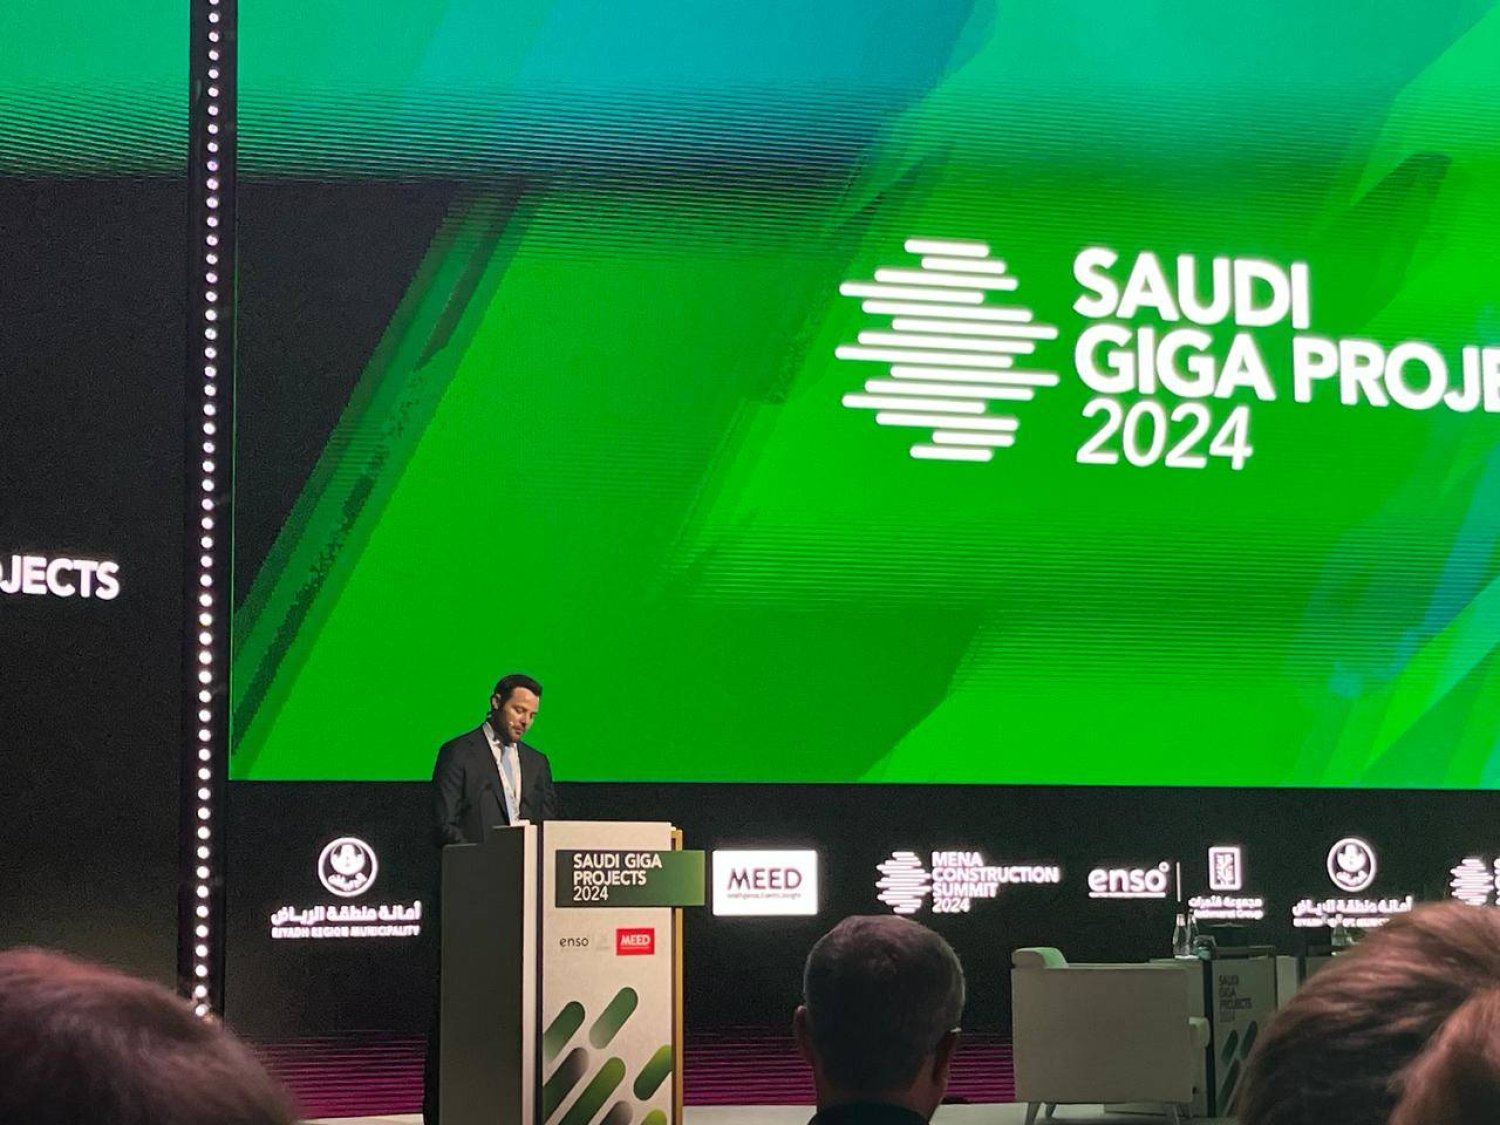 خلال افتتاح قمة «مشاريع جيغا السعودية 2024» (الشرق الأوسط)